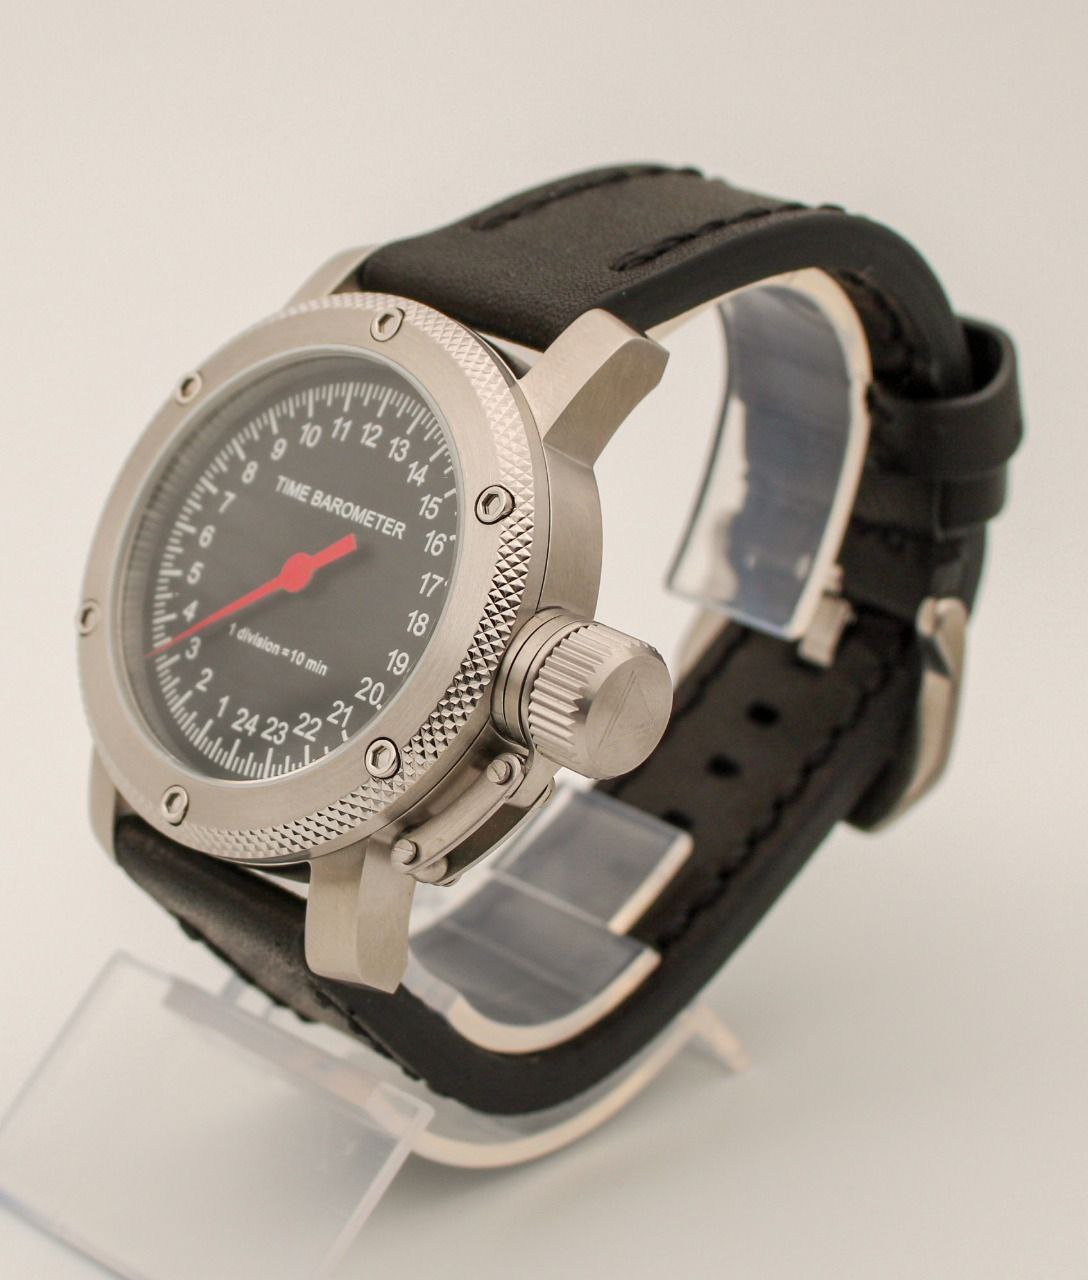 картинка Часы наручные TIME BAROMETER, автоподзавод, противоударные, чёрный циферблат, сапфировое стекло, механизм Восток 2431.01. от магазина Watch Triumph